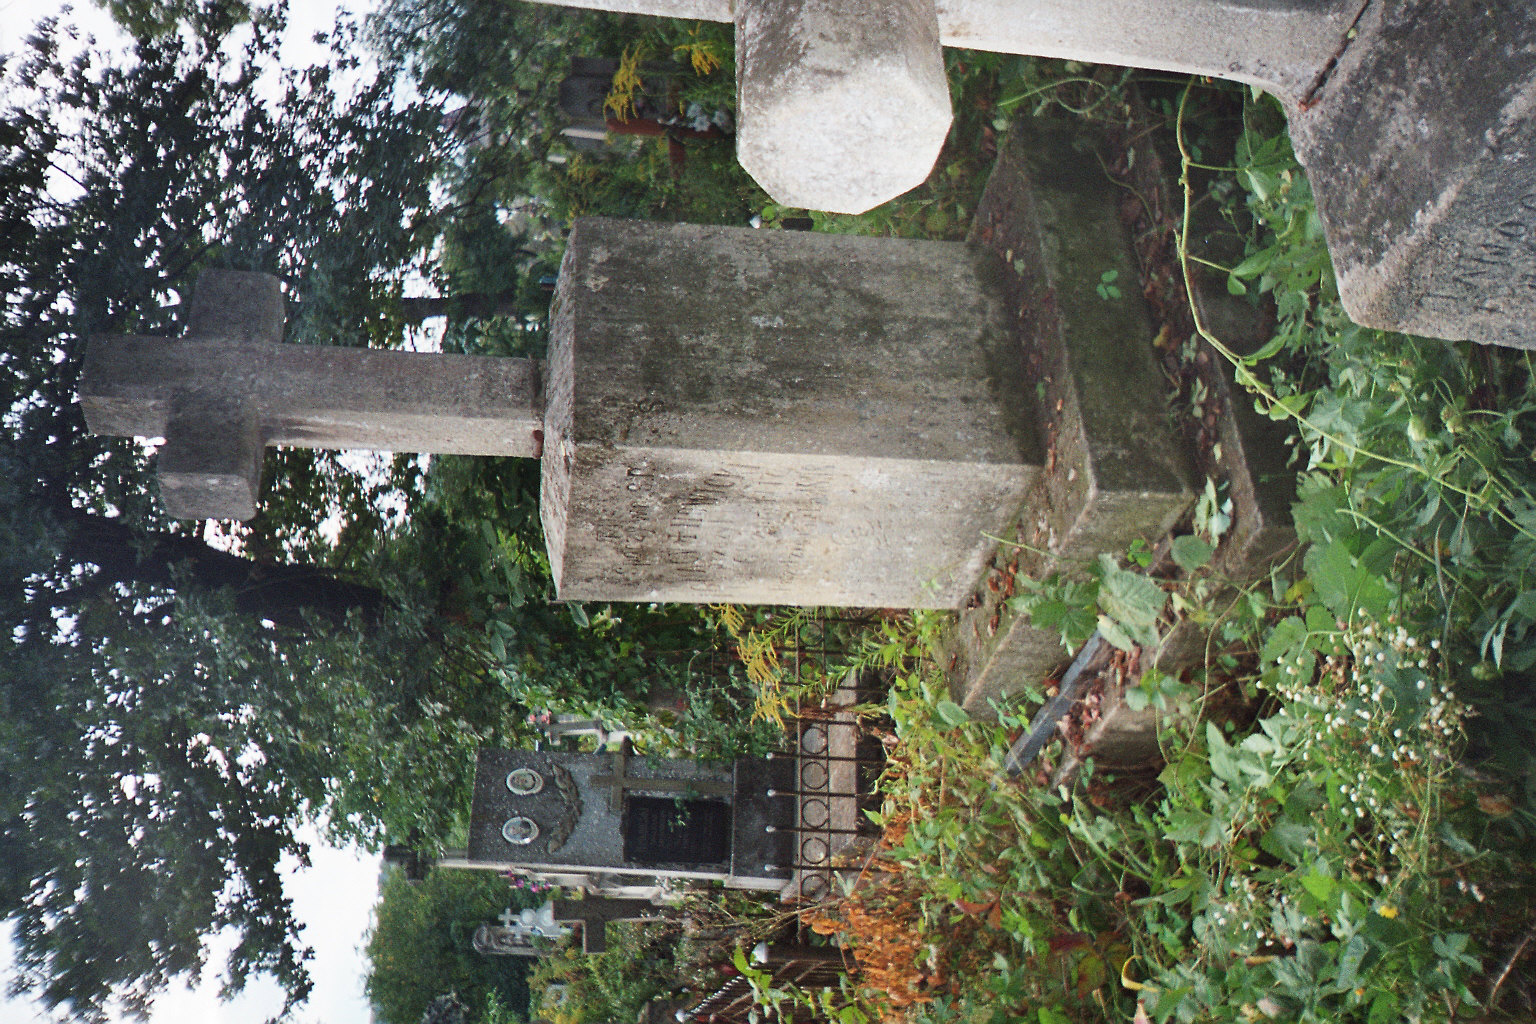 Tombstone of Anna Mulak and Ignacy Nowicki, Zaleszczyki cemetery, as of 2005.